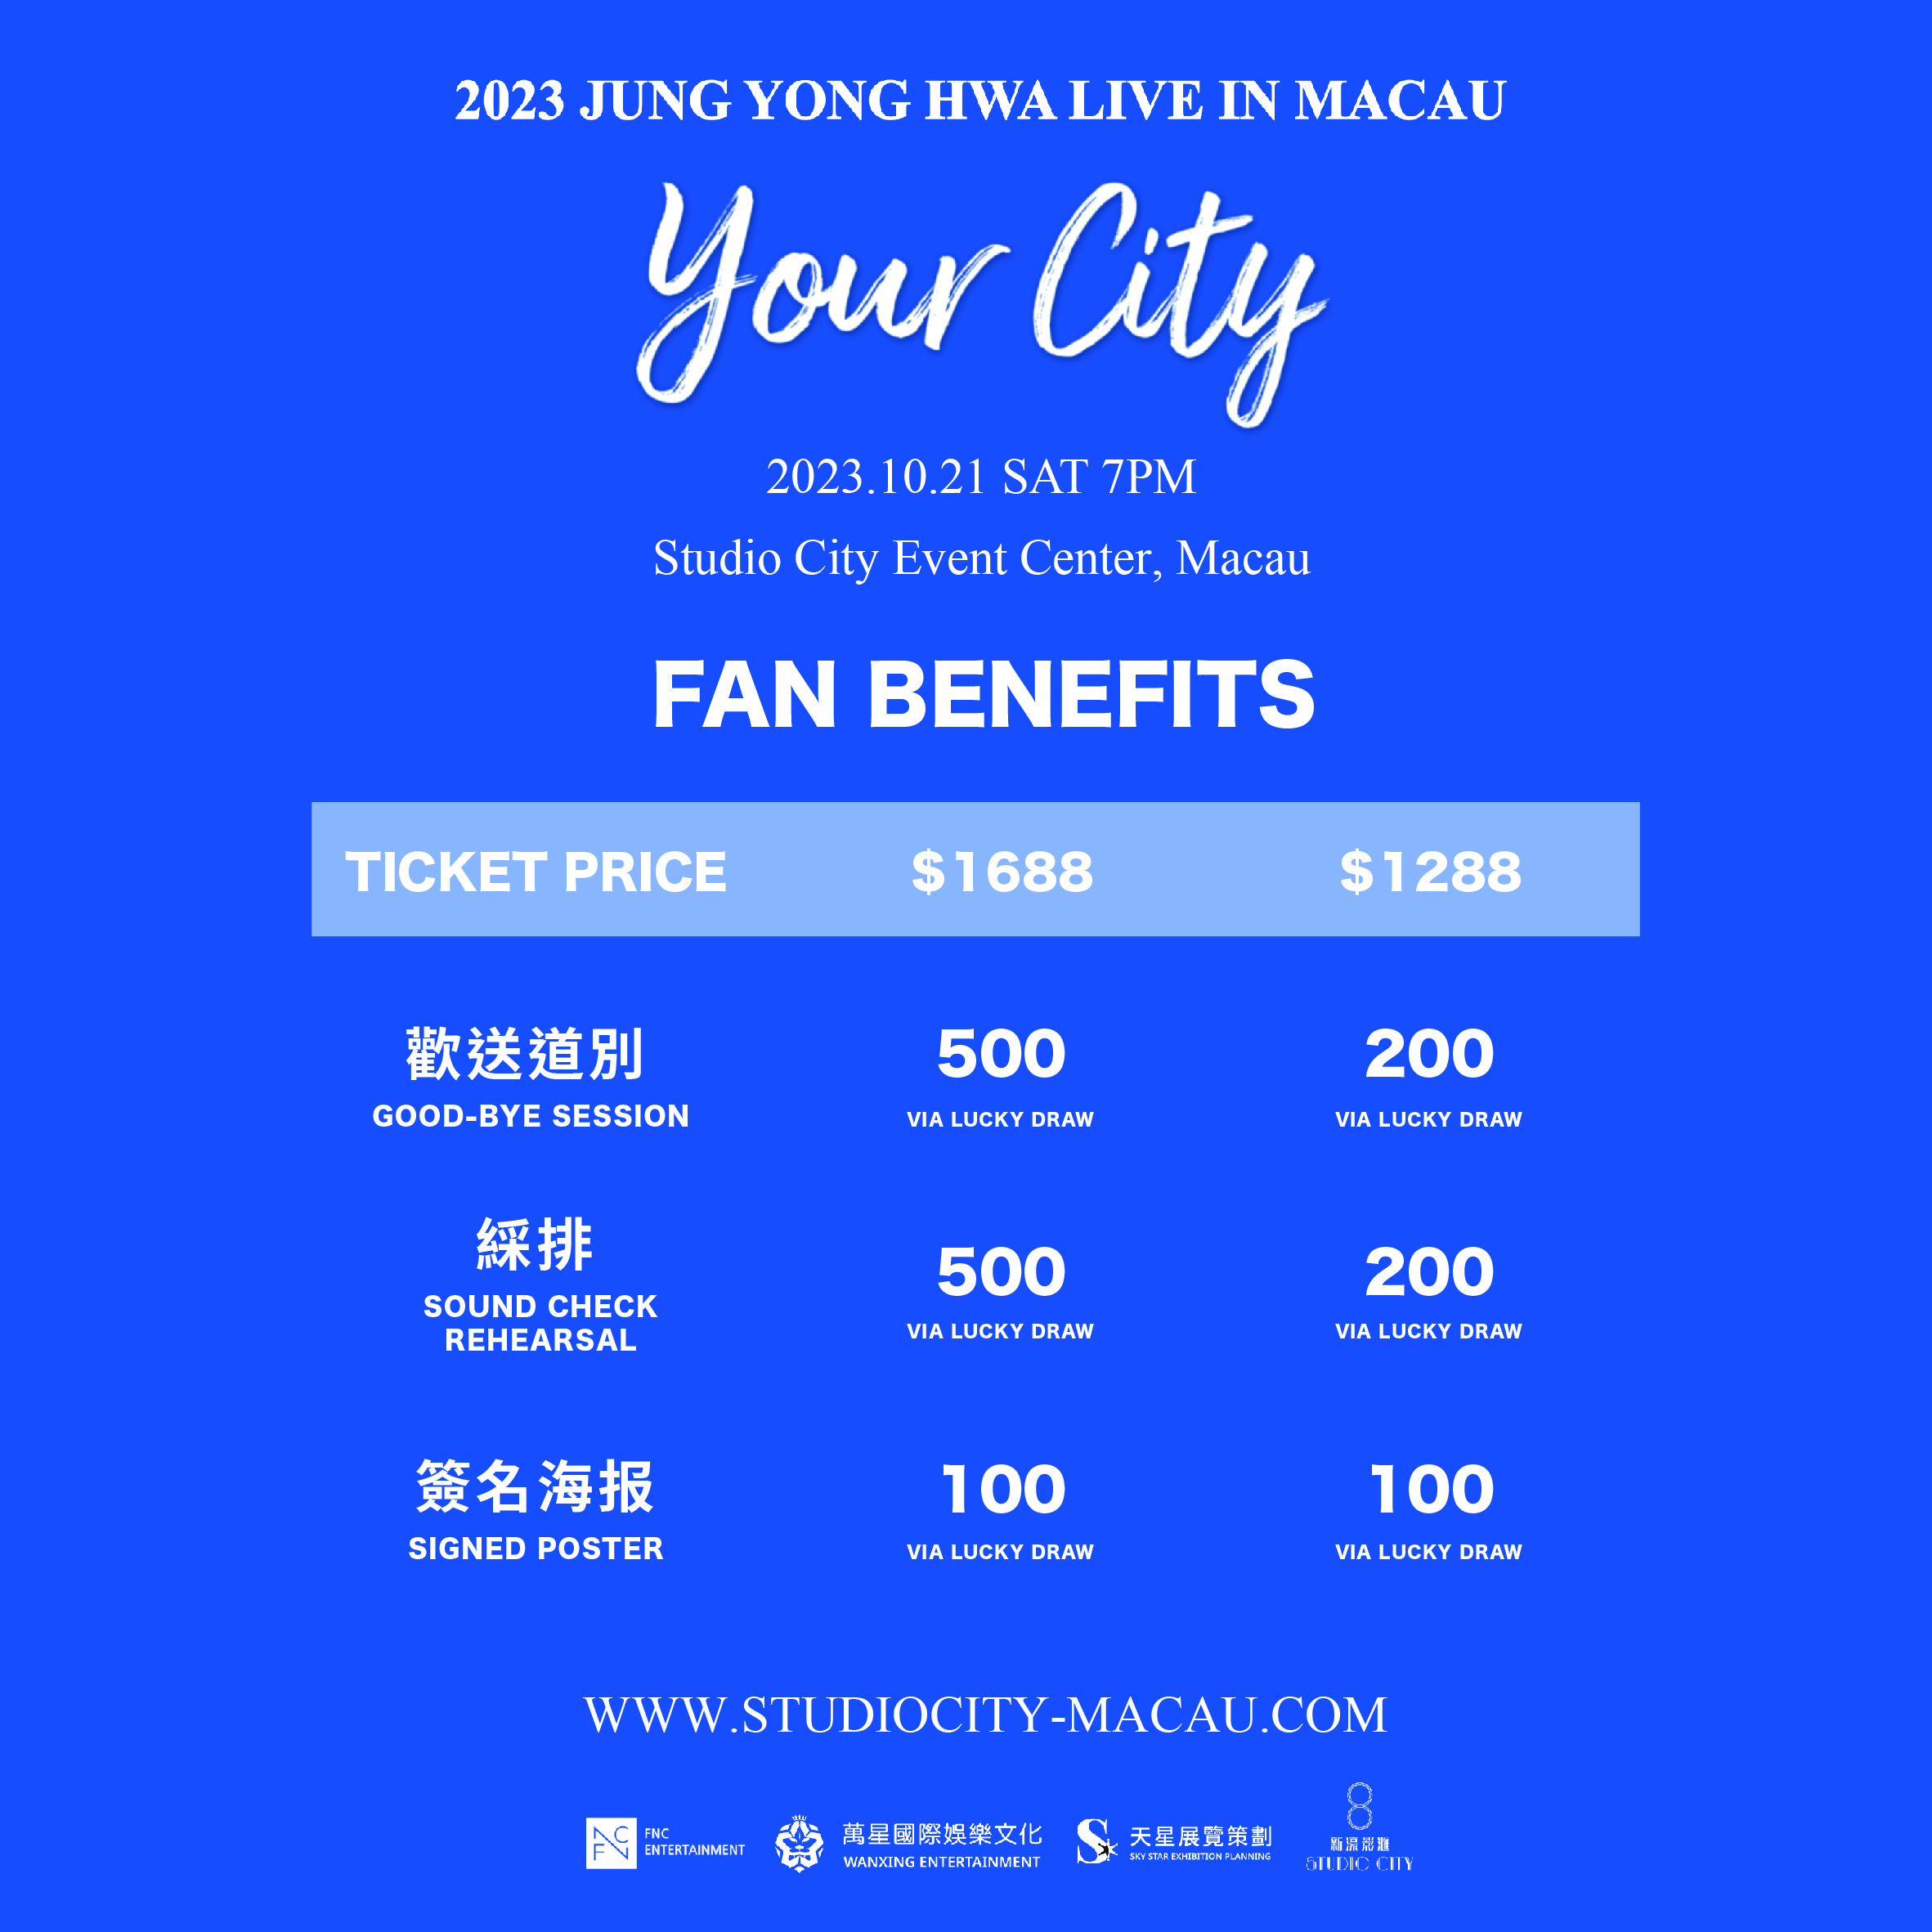 鄭容和 ‘Your City’ 演唱會 2023 澳門站